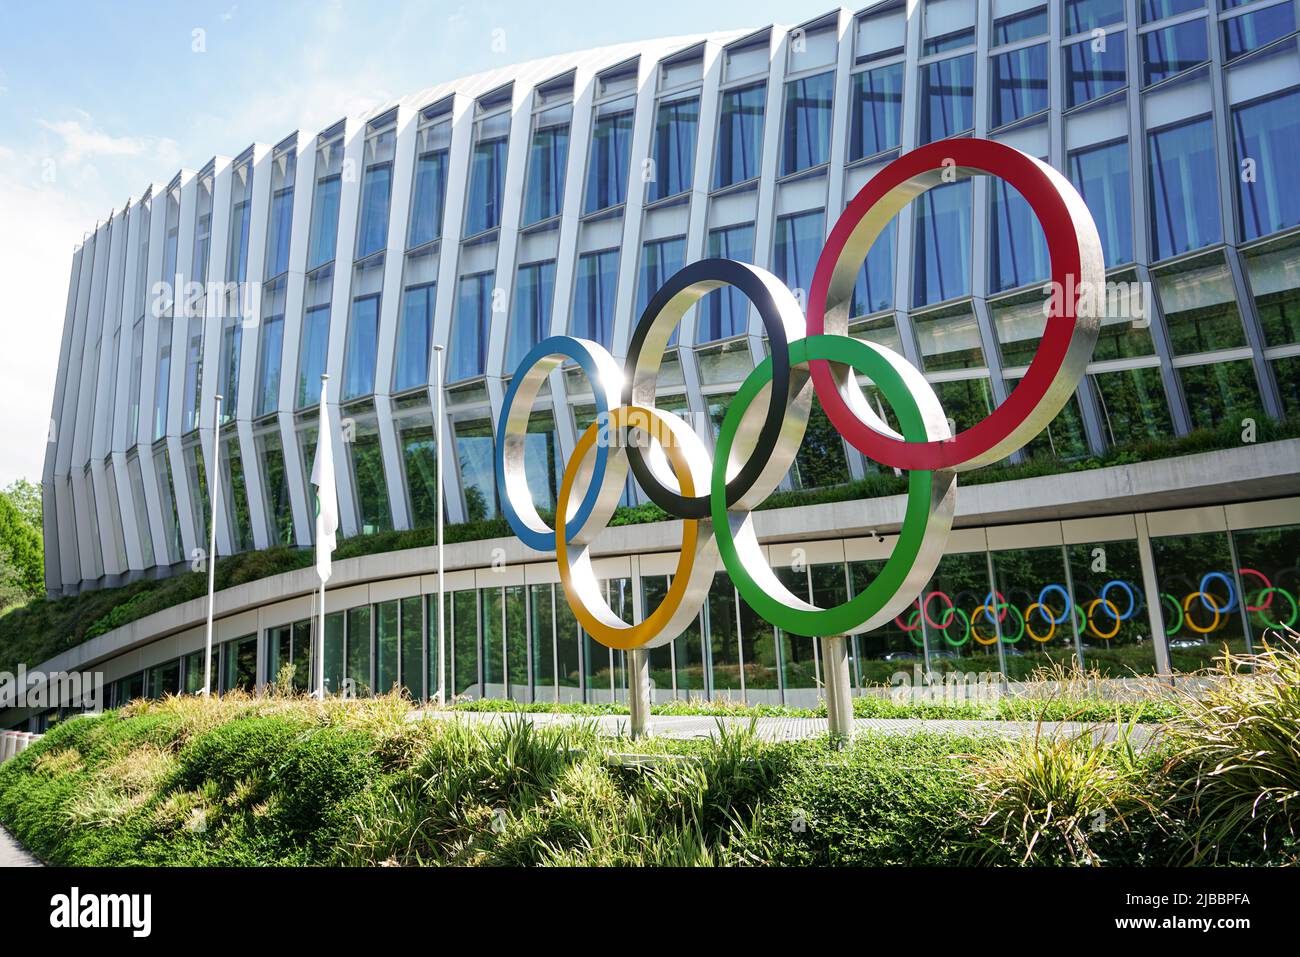 Siège du Comité International Olympique. Anneaux olympiques. Lausanne, Suisse - juin 2022 Banque D'Images